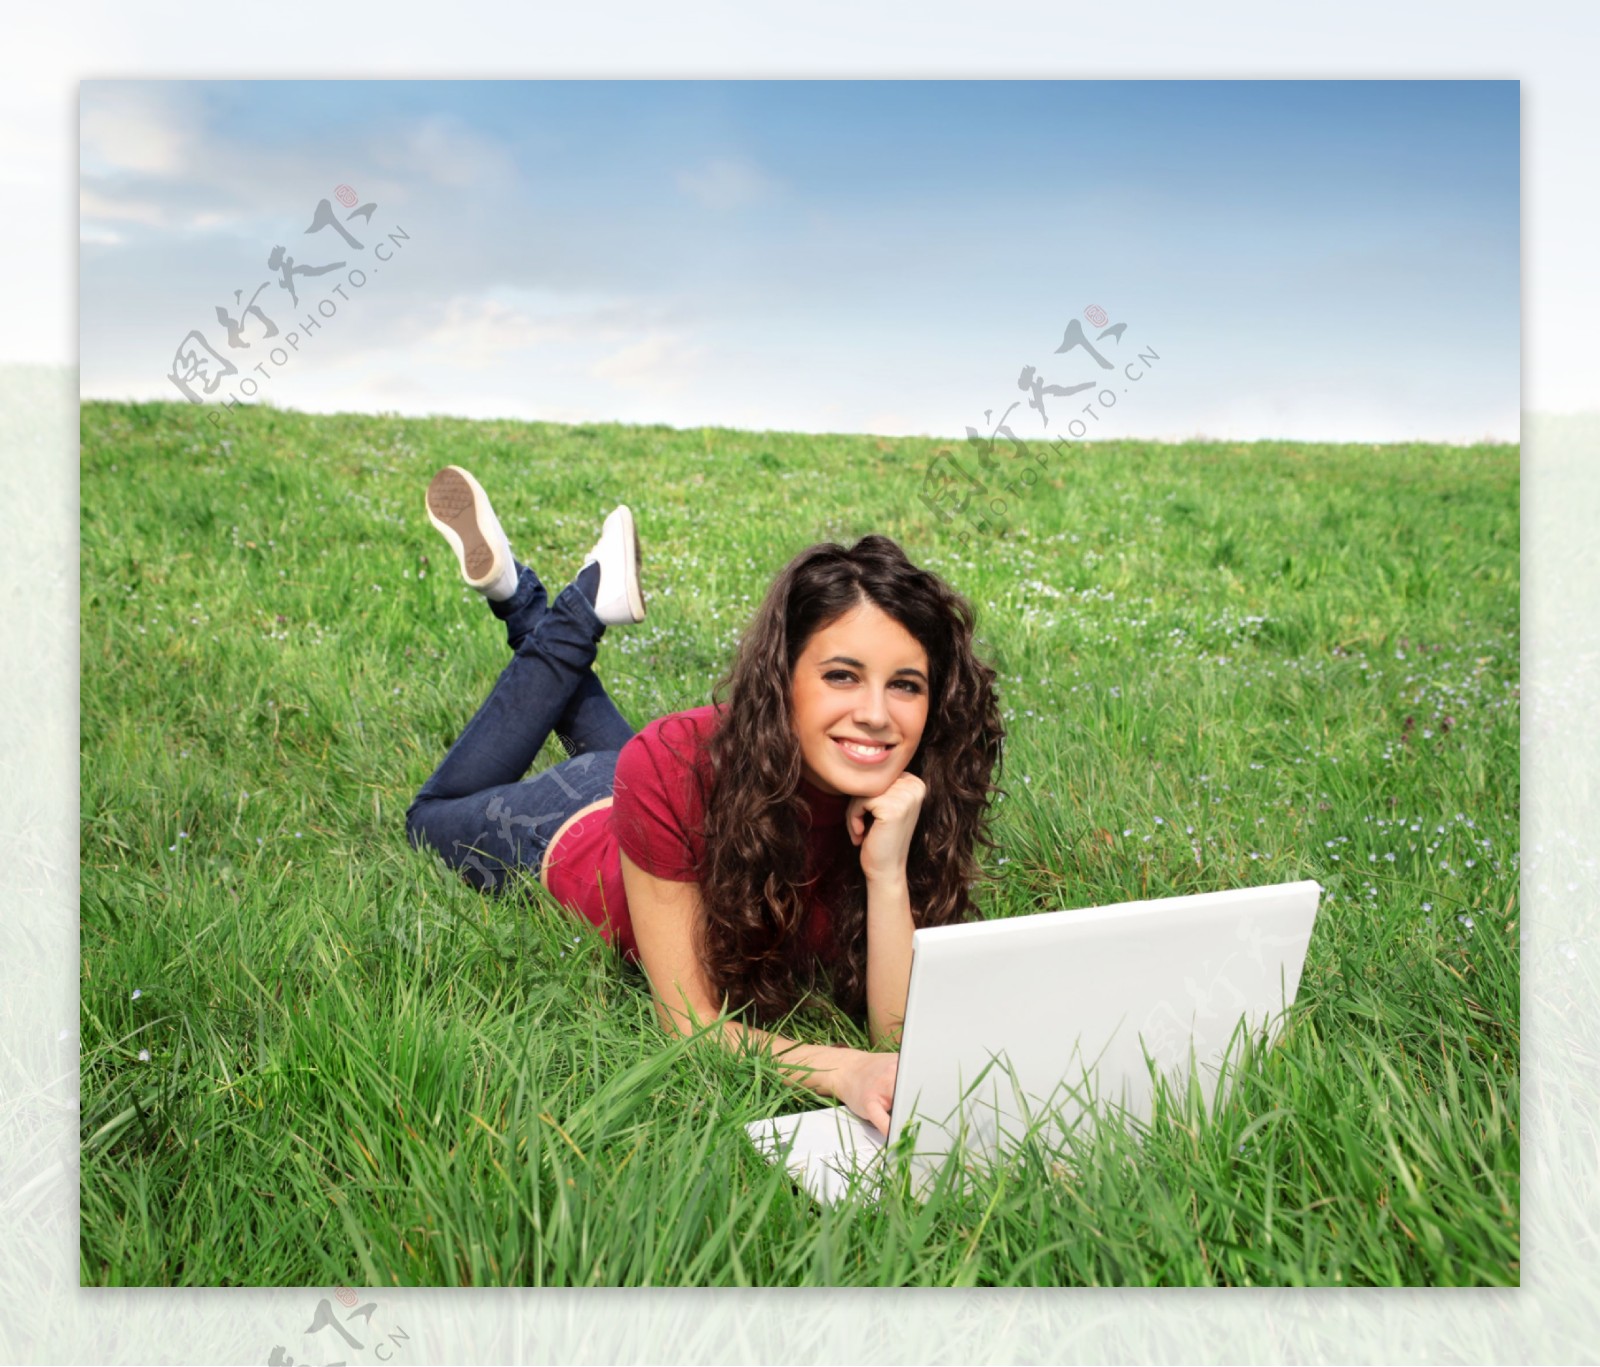 趴在草地上玩电脑的美女图片